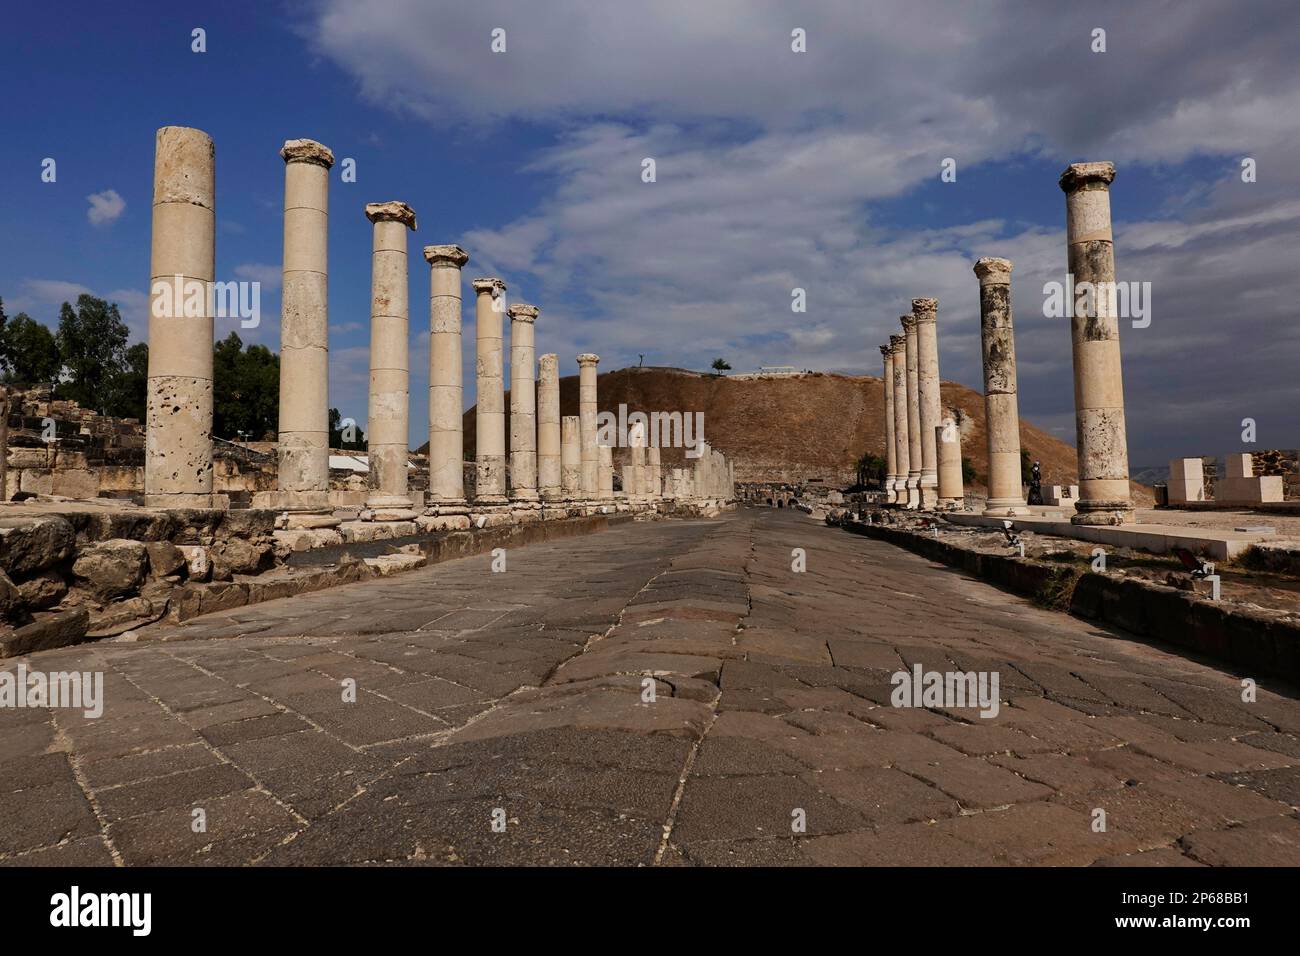 Les ruines de l'ancienne ville romaine et byzantine de Bet She'an, parc national de Bet She'an, Israël, Moyen-Orient Banque D'Images